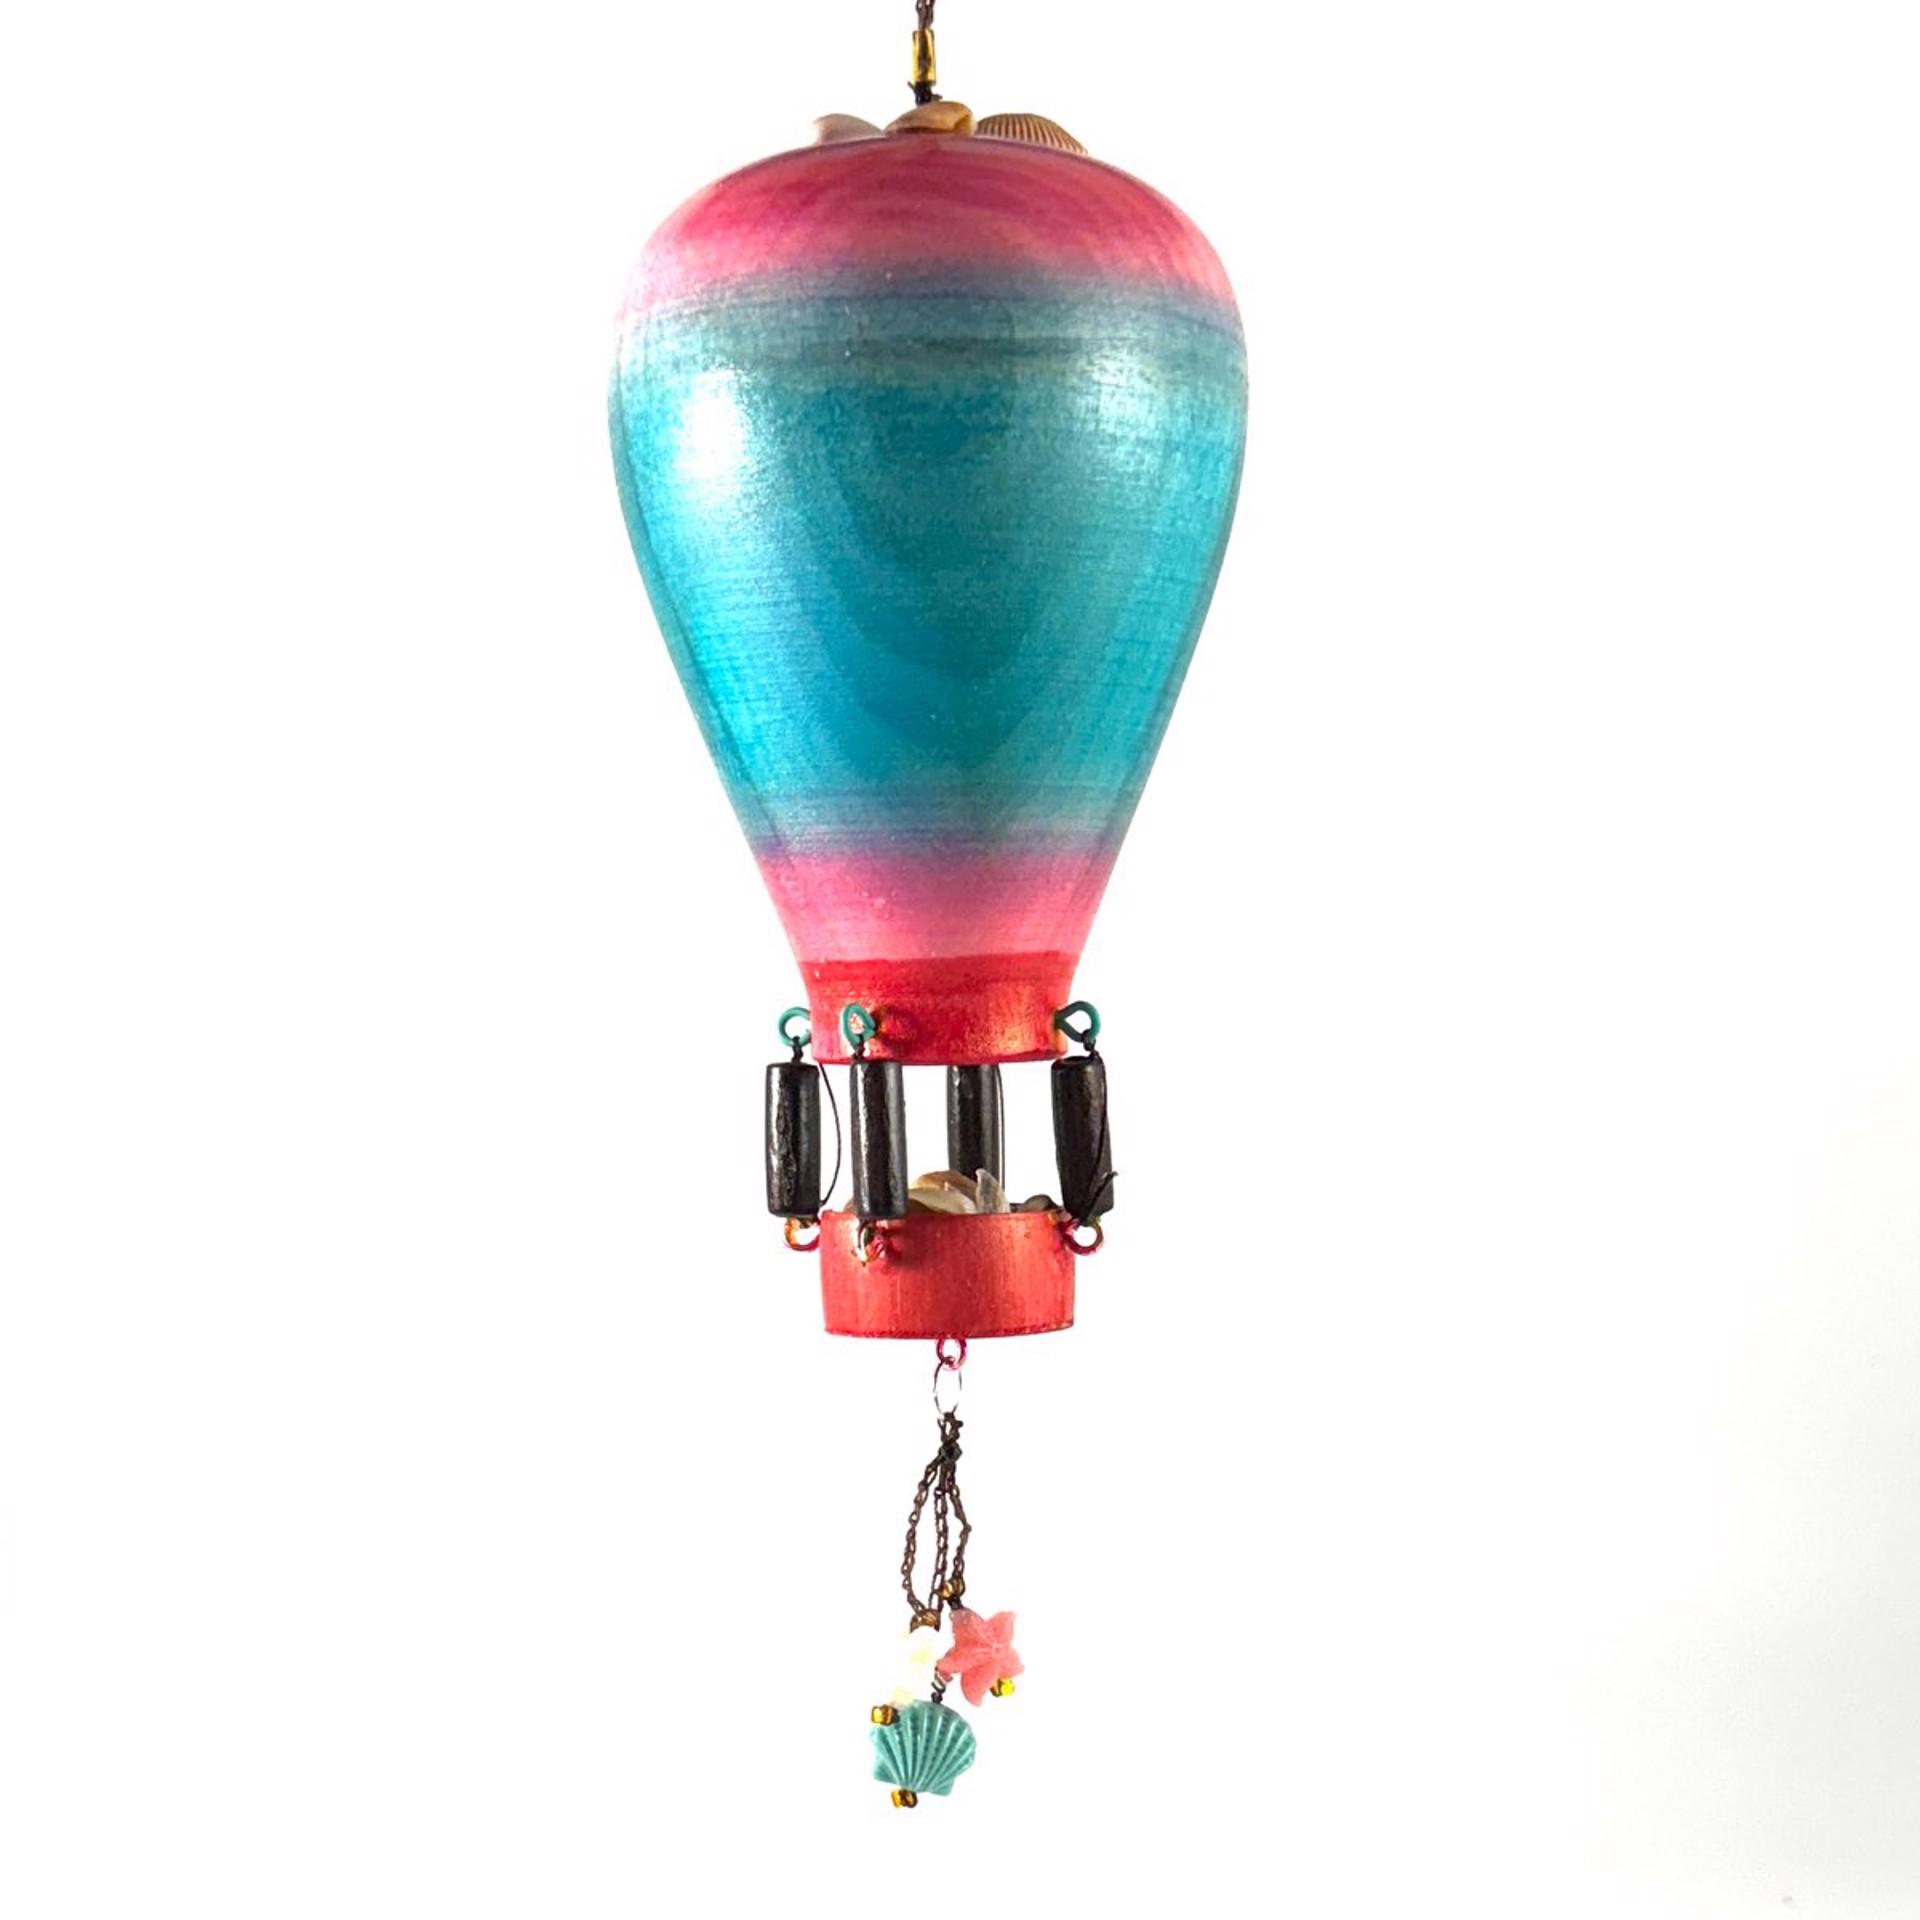 Whimsical Hot Air Balloon Ornament MT23-16 by Marc Tannenbaum